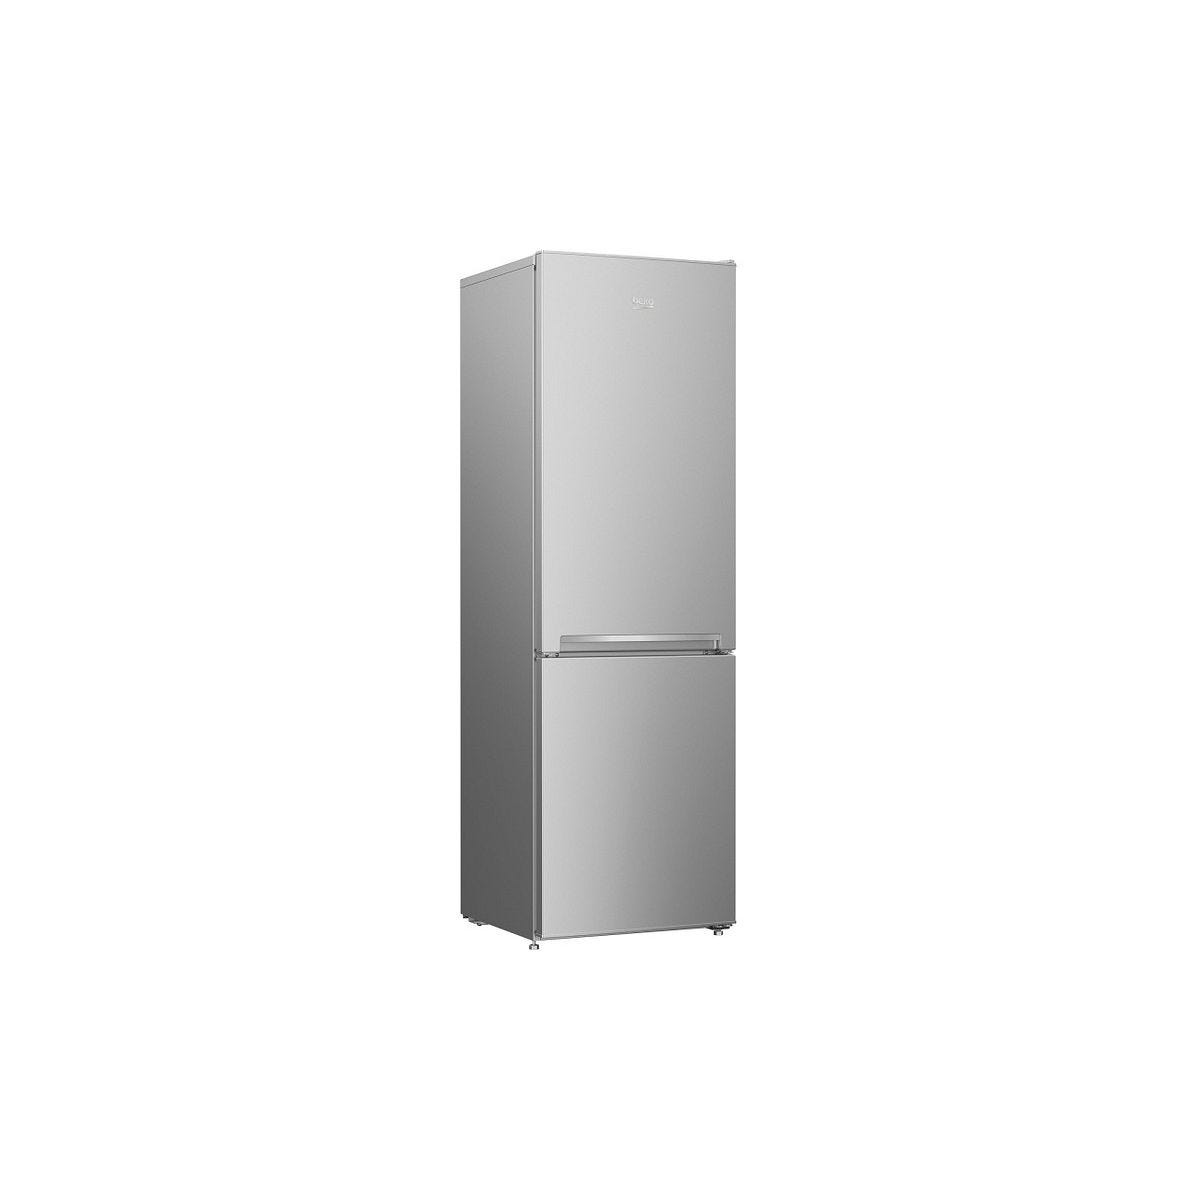 Réfrigérateur multi-portes Beko Refrigerateur Frigo congélateur